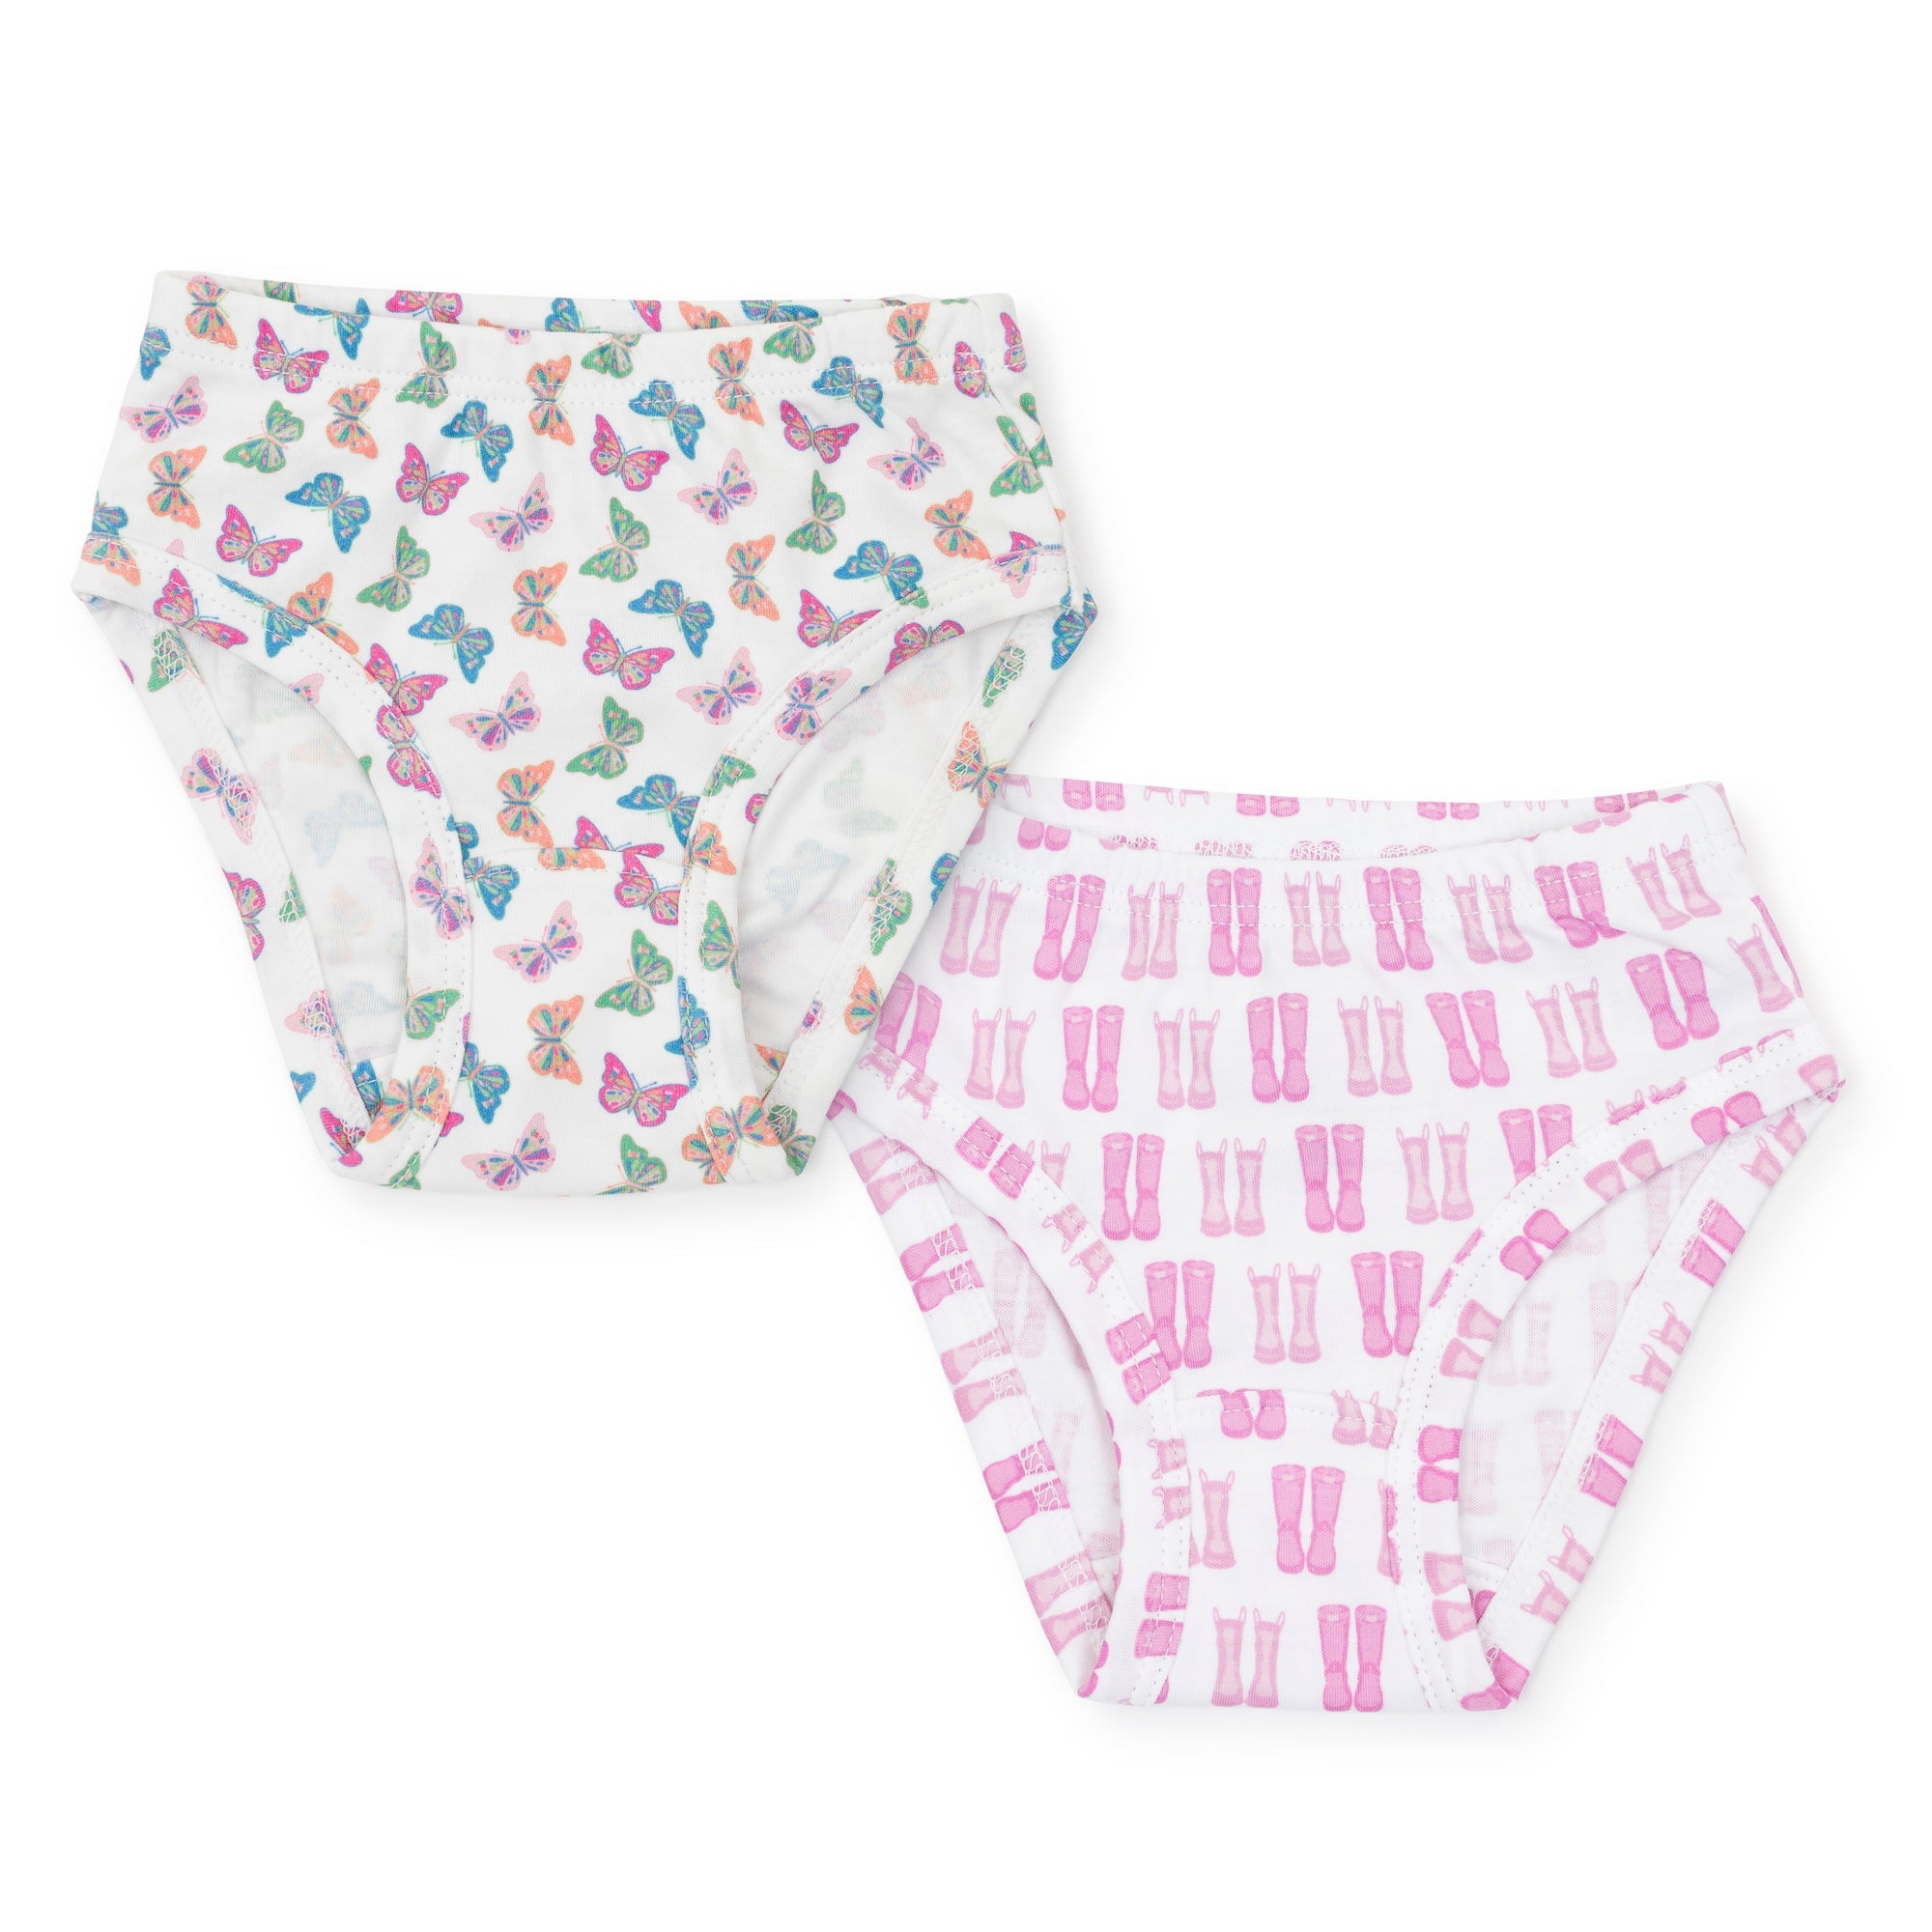 Lyra Kids Pink & Black Cotton Regular Fit Panty (Pack of 12